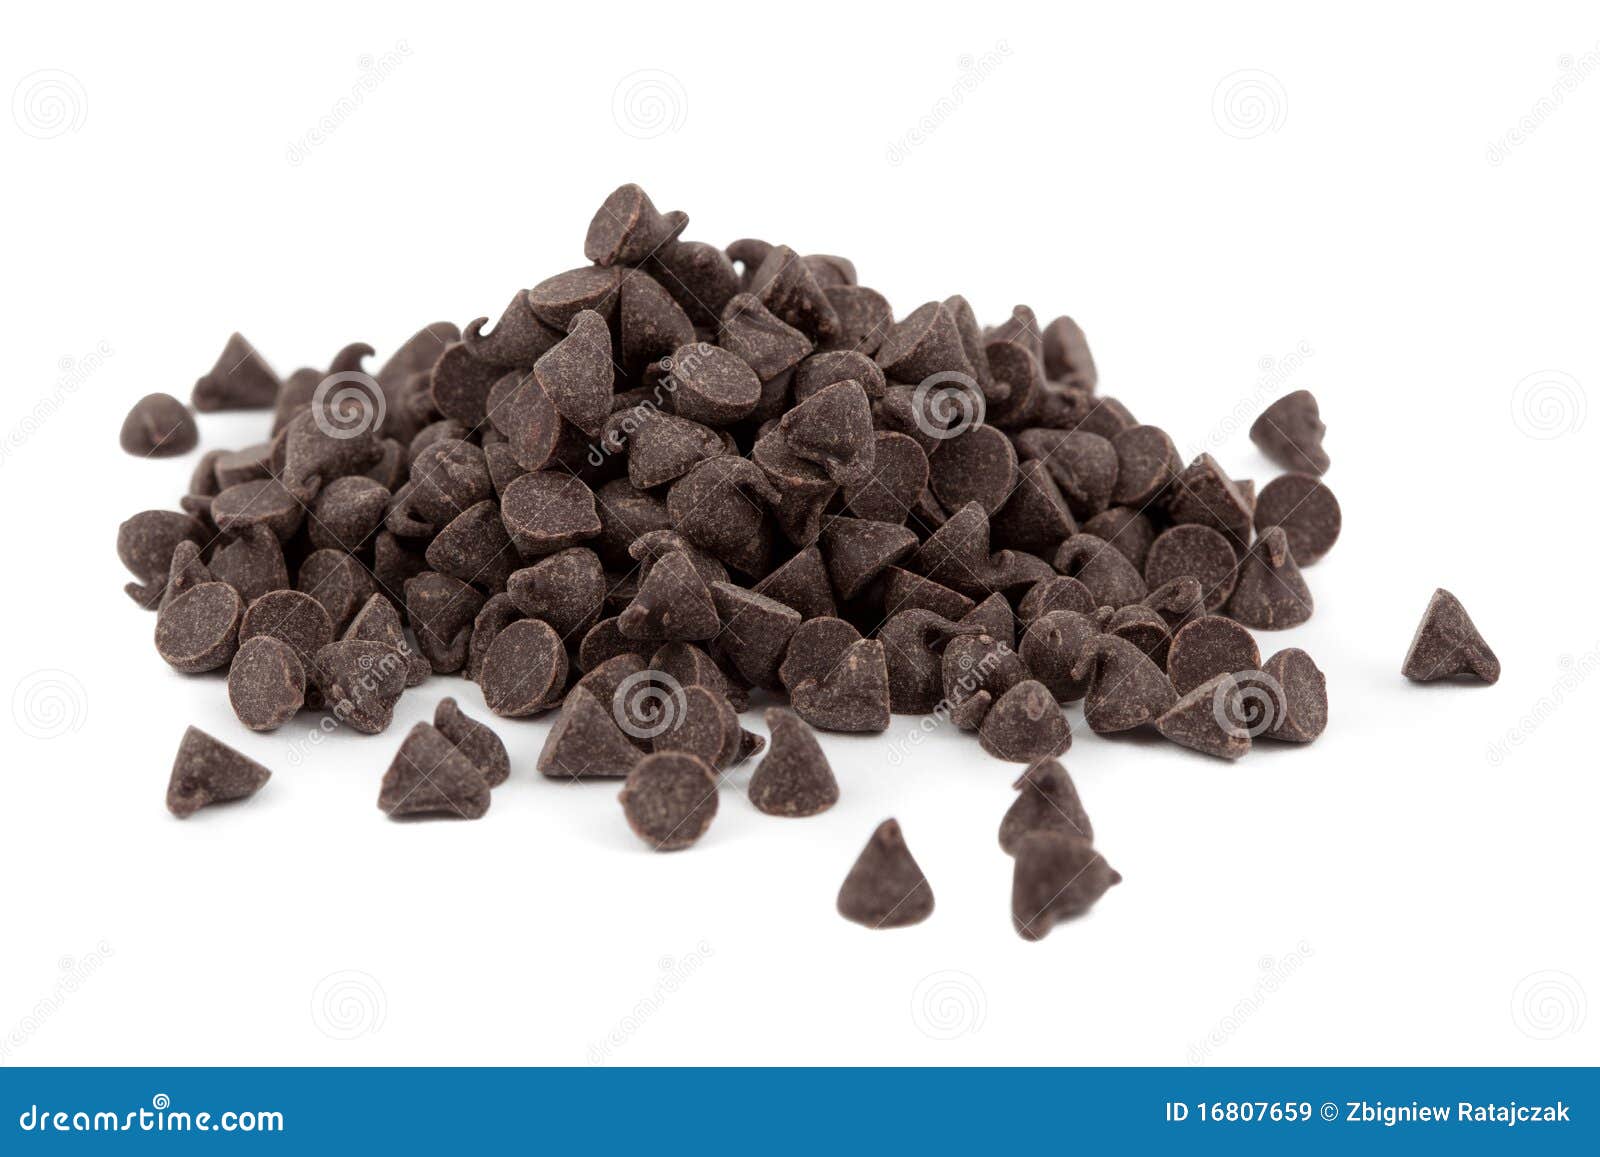 Schokoladentropfen stockbild. Bild von form, stapel, nachtisch - 16807659